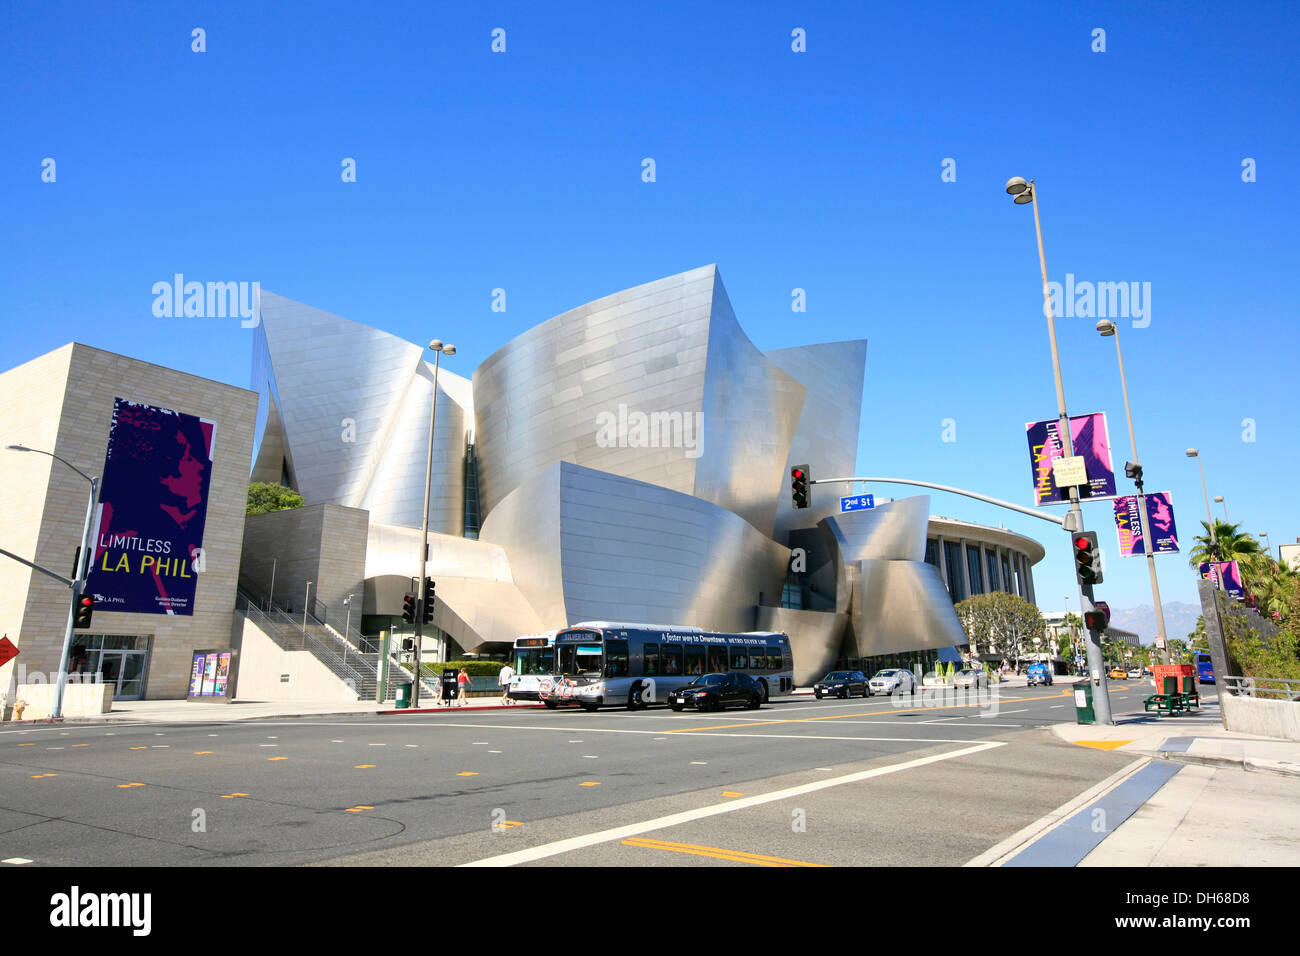 LA Phil, le Walt Disney Concert Hall, au centre-ville, South Grand Avenue, construit par Frank Gehry, Los Angeles, Californie, USA Banque D'Images